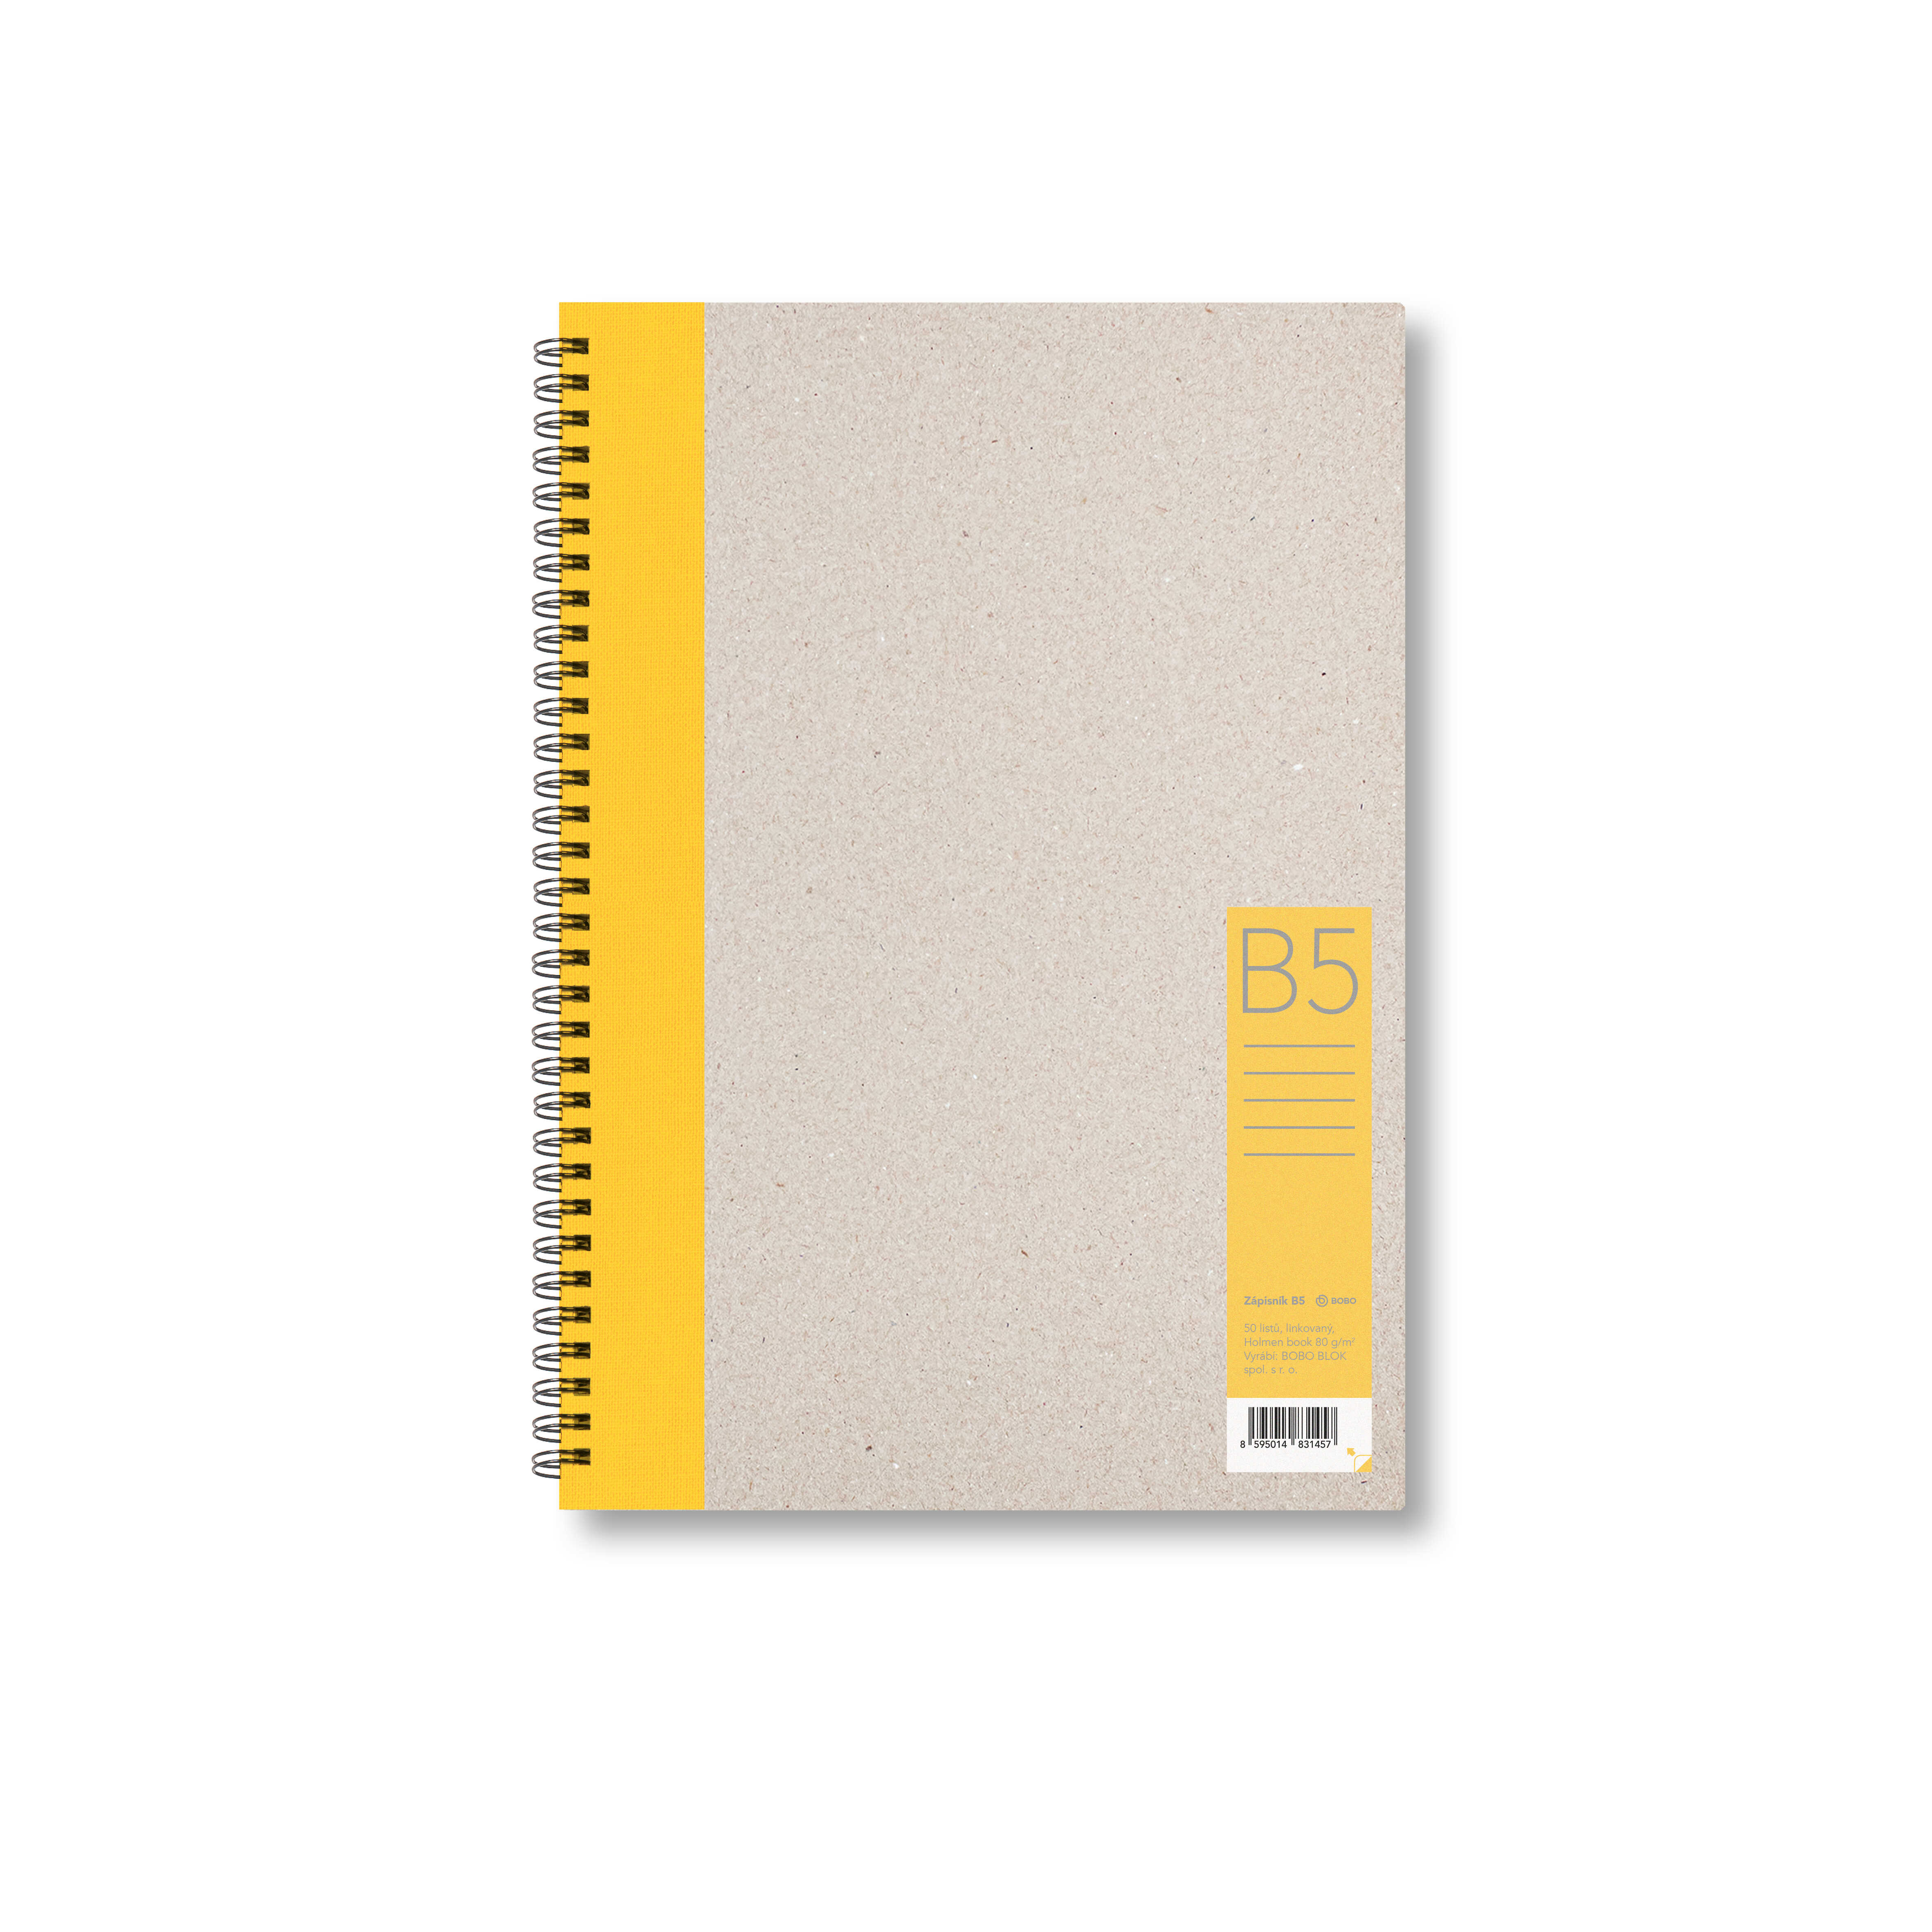 Zápisník Bobo B5, linkovaný, žlutý